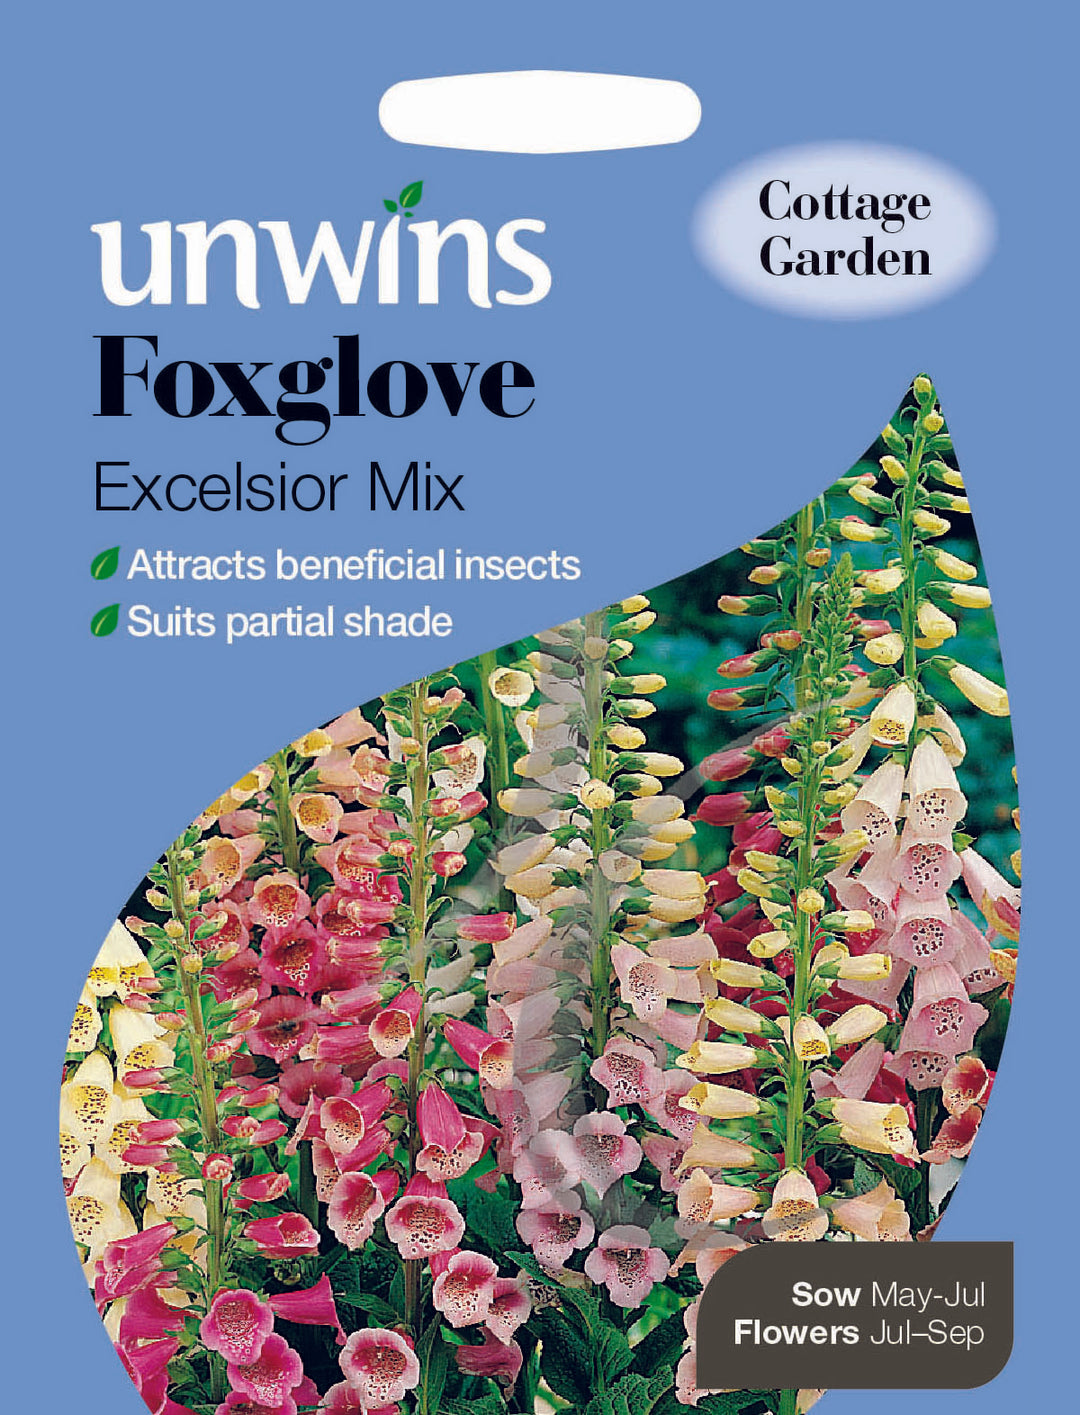 Foxglove Excelsior Mix